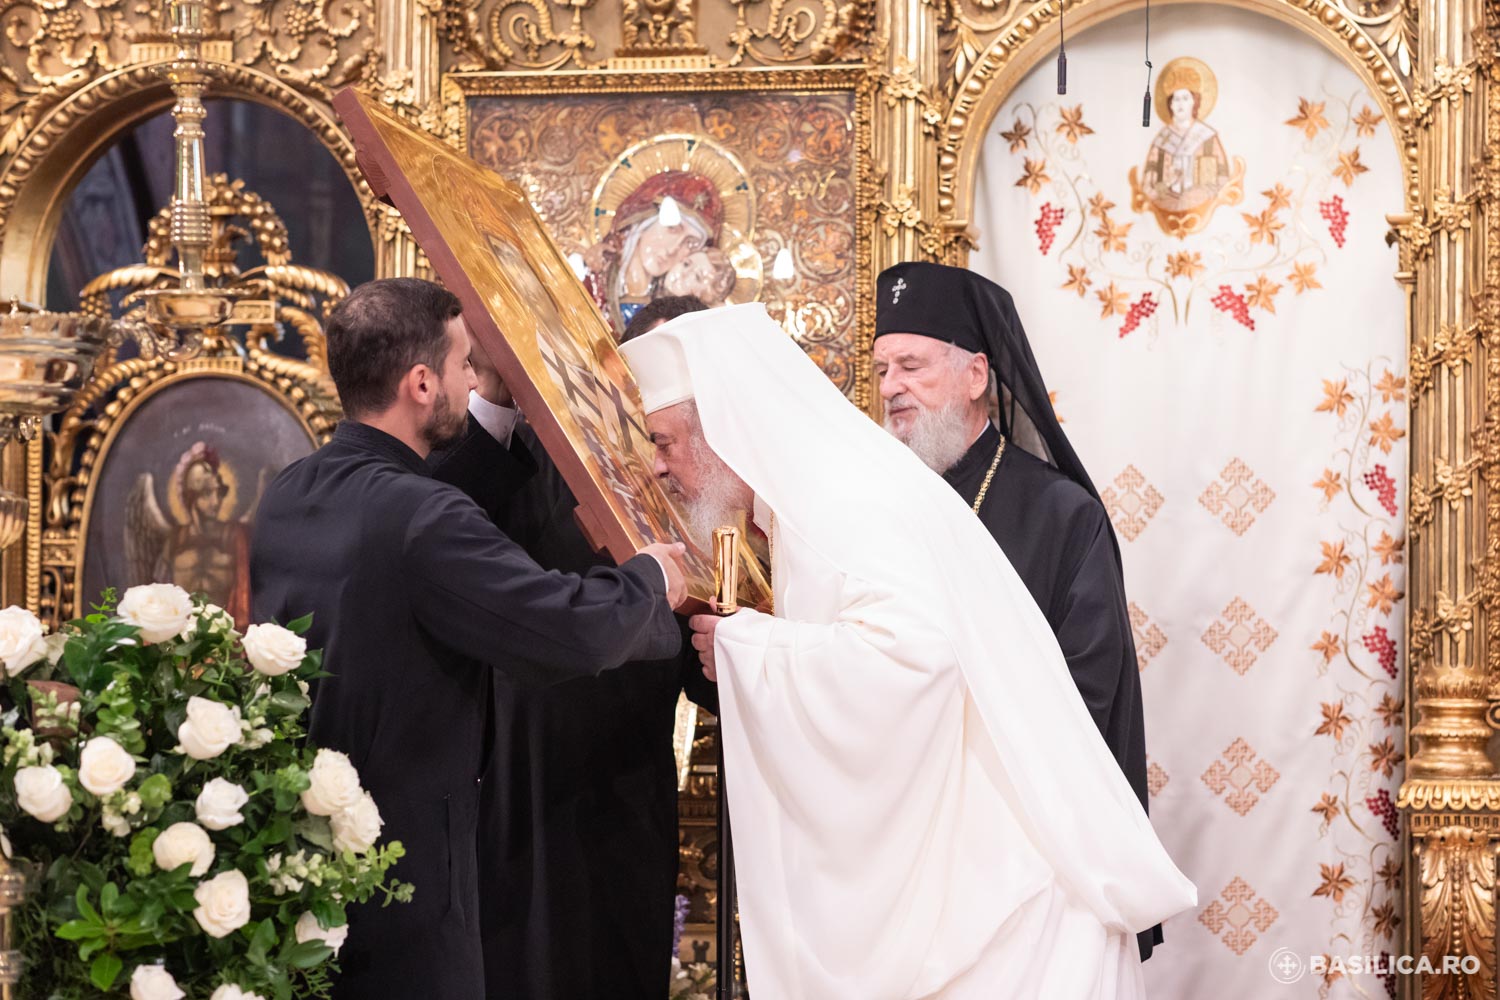 Romania Celebrates 16th Anniversary of Patriarch Daniel’s Enthronement